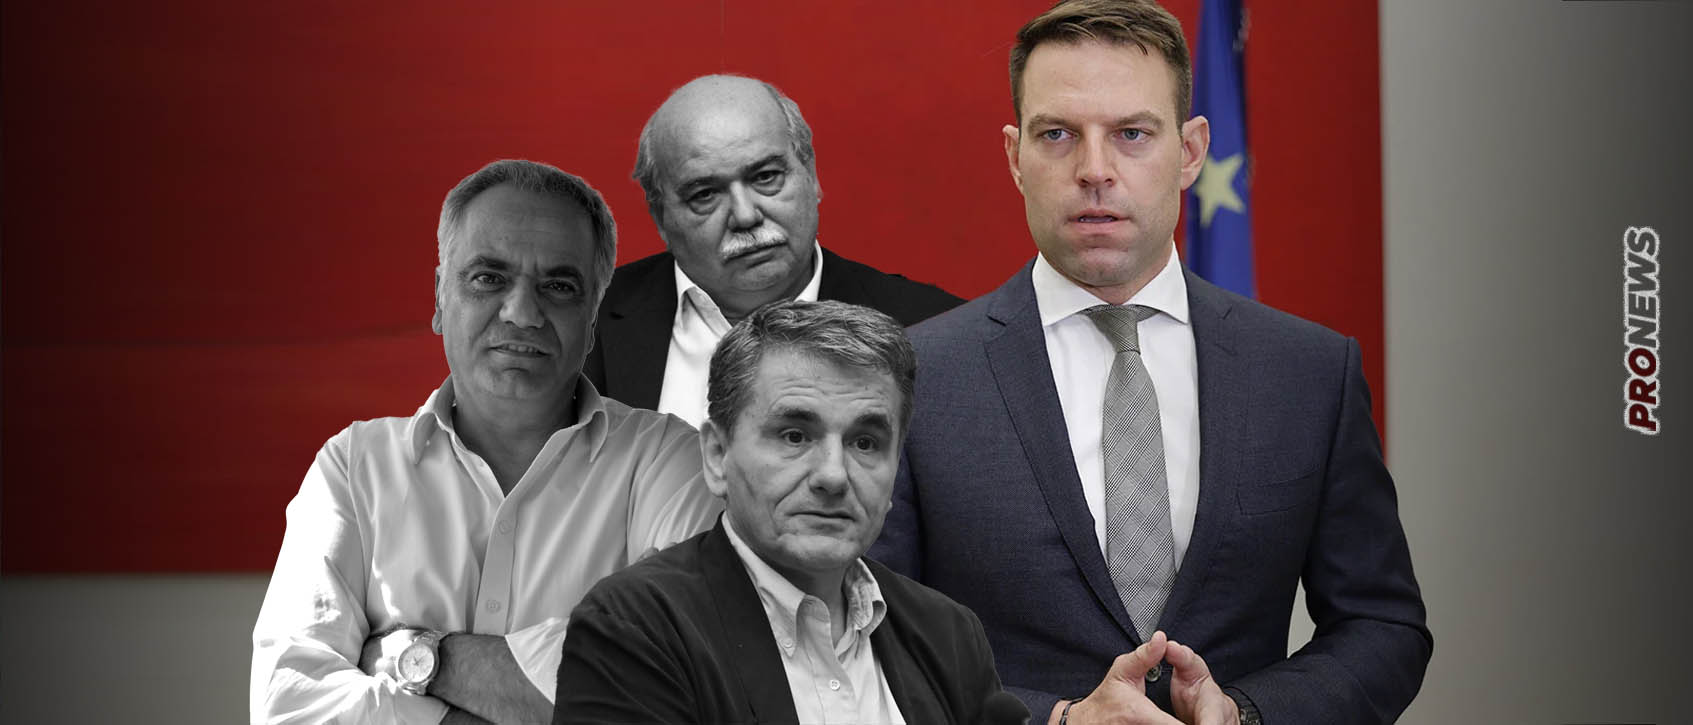 Ο κύβος ερρίφθη:  Ο Σ.Κασσελάκης «καθαρίζει» τον ΣΥΡΙΖΑ – «Με δημοψήφισμα θα εγκριθούν οι διαγραφές» (upd)